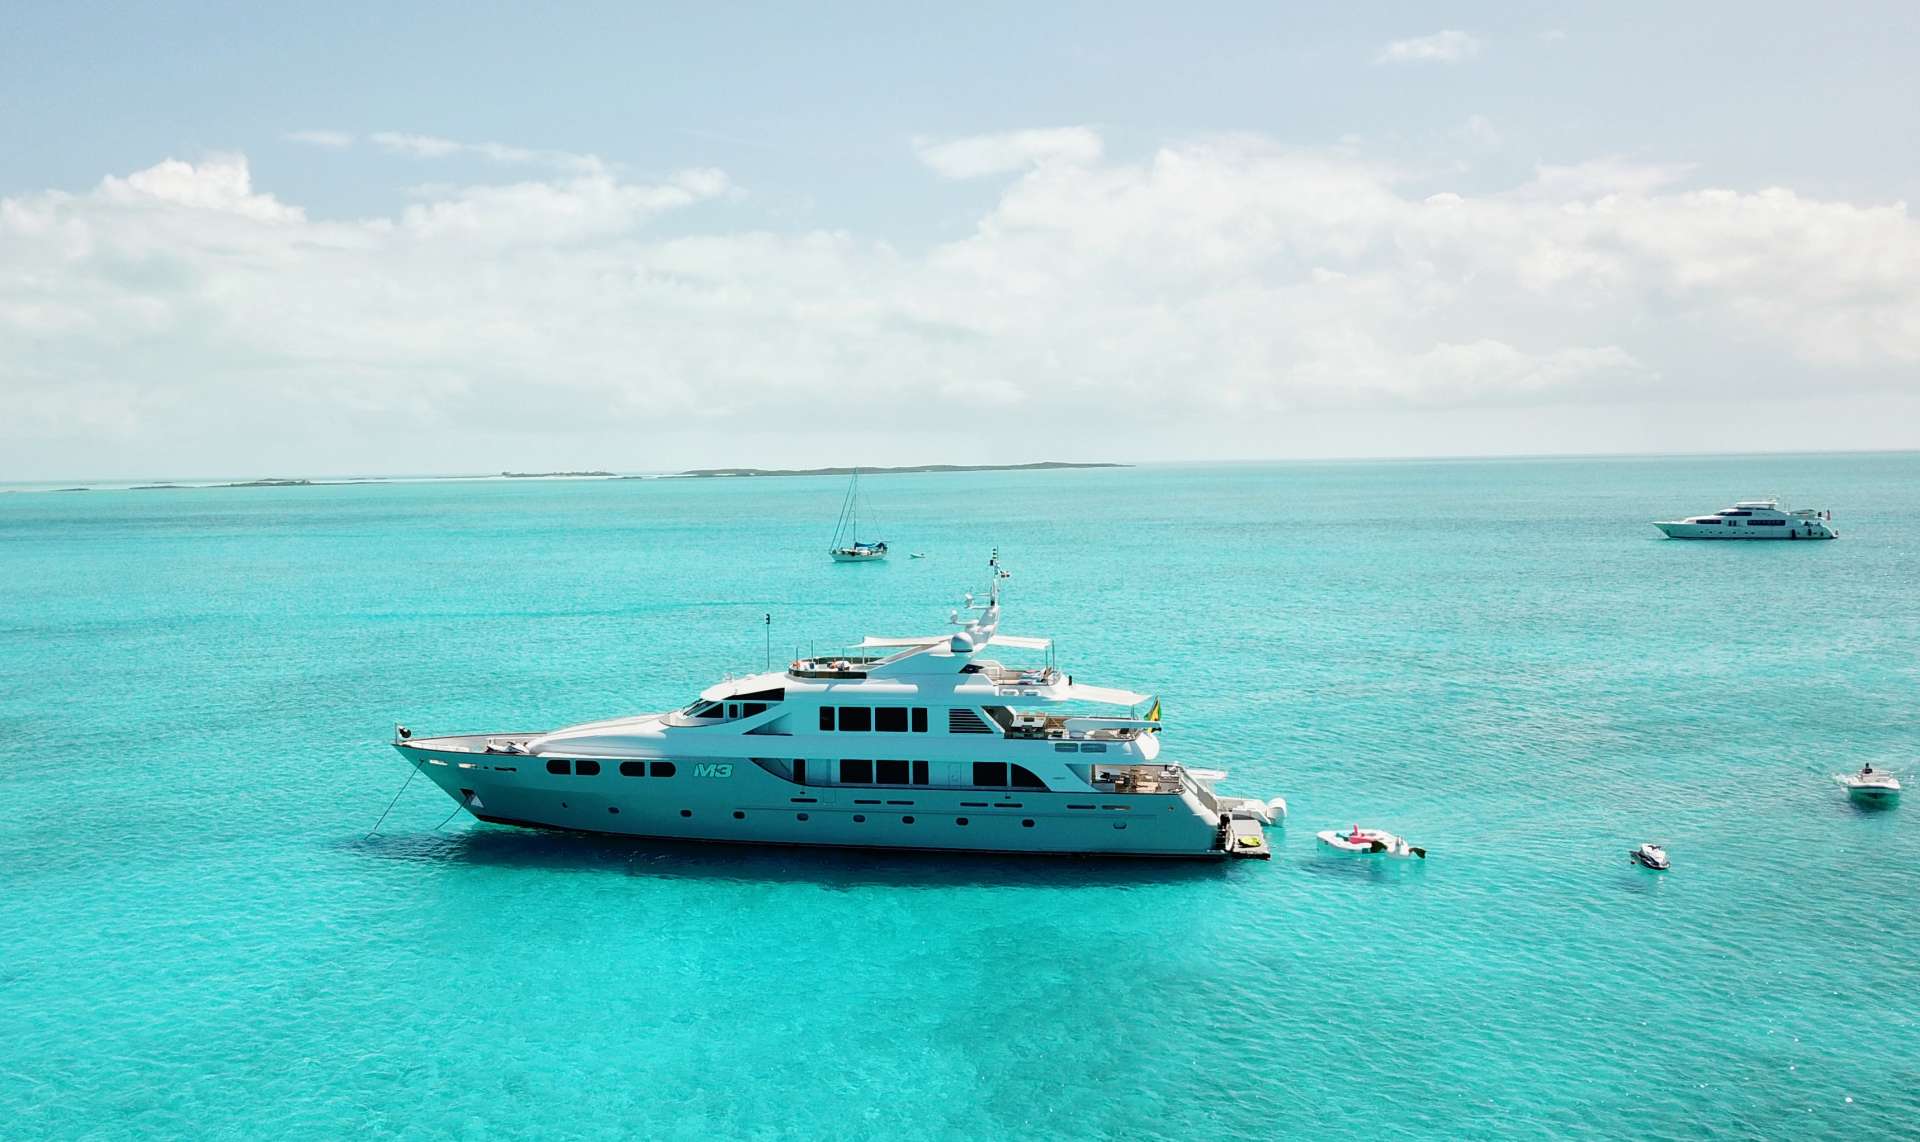 m3 - Yacht Charter Bahamas & Boat hire in US East Coast & Bahamas 2